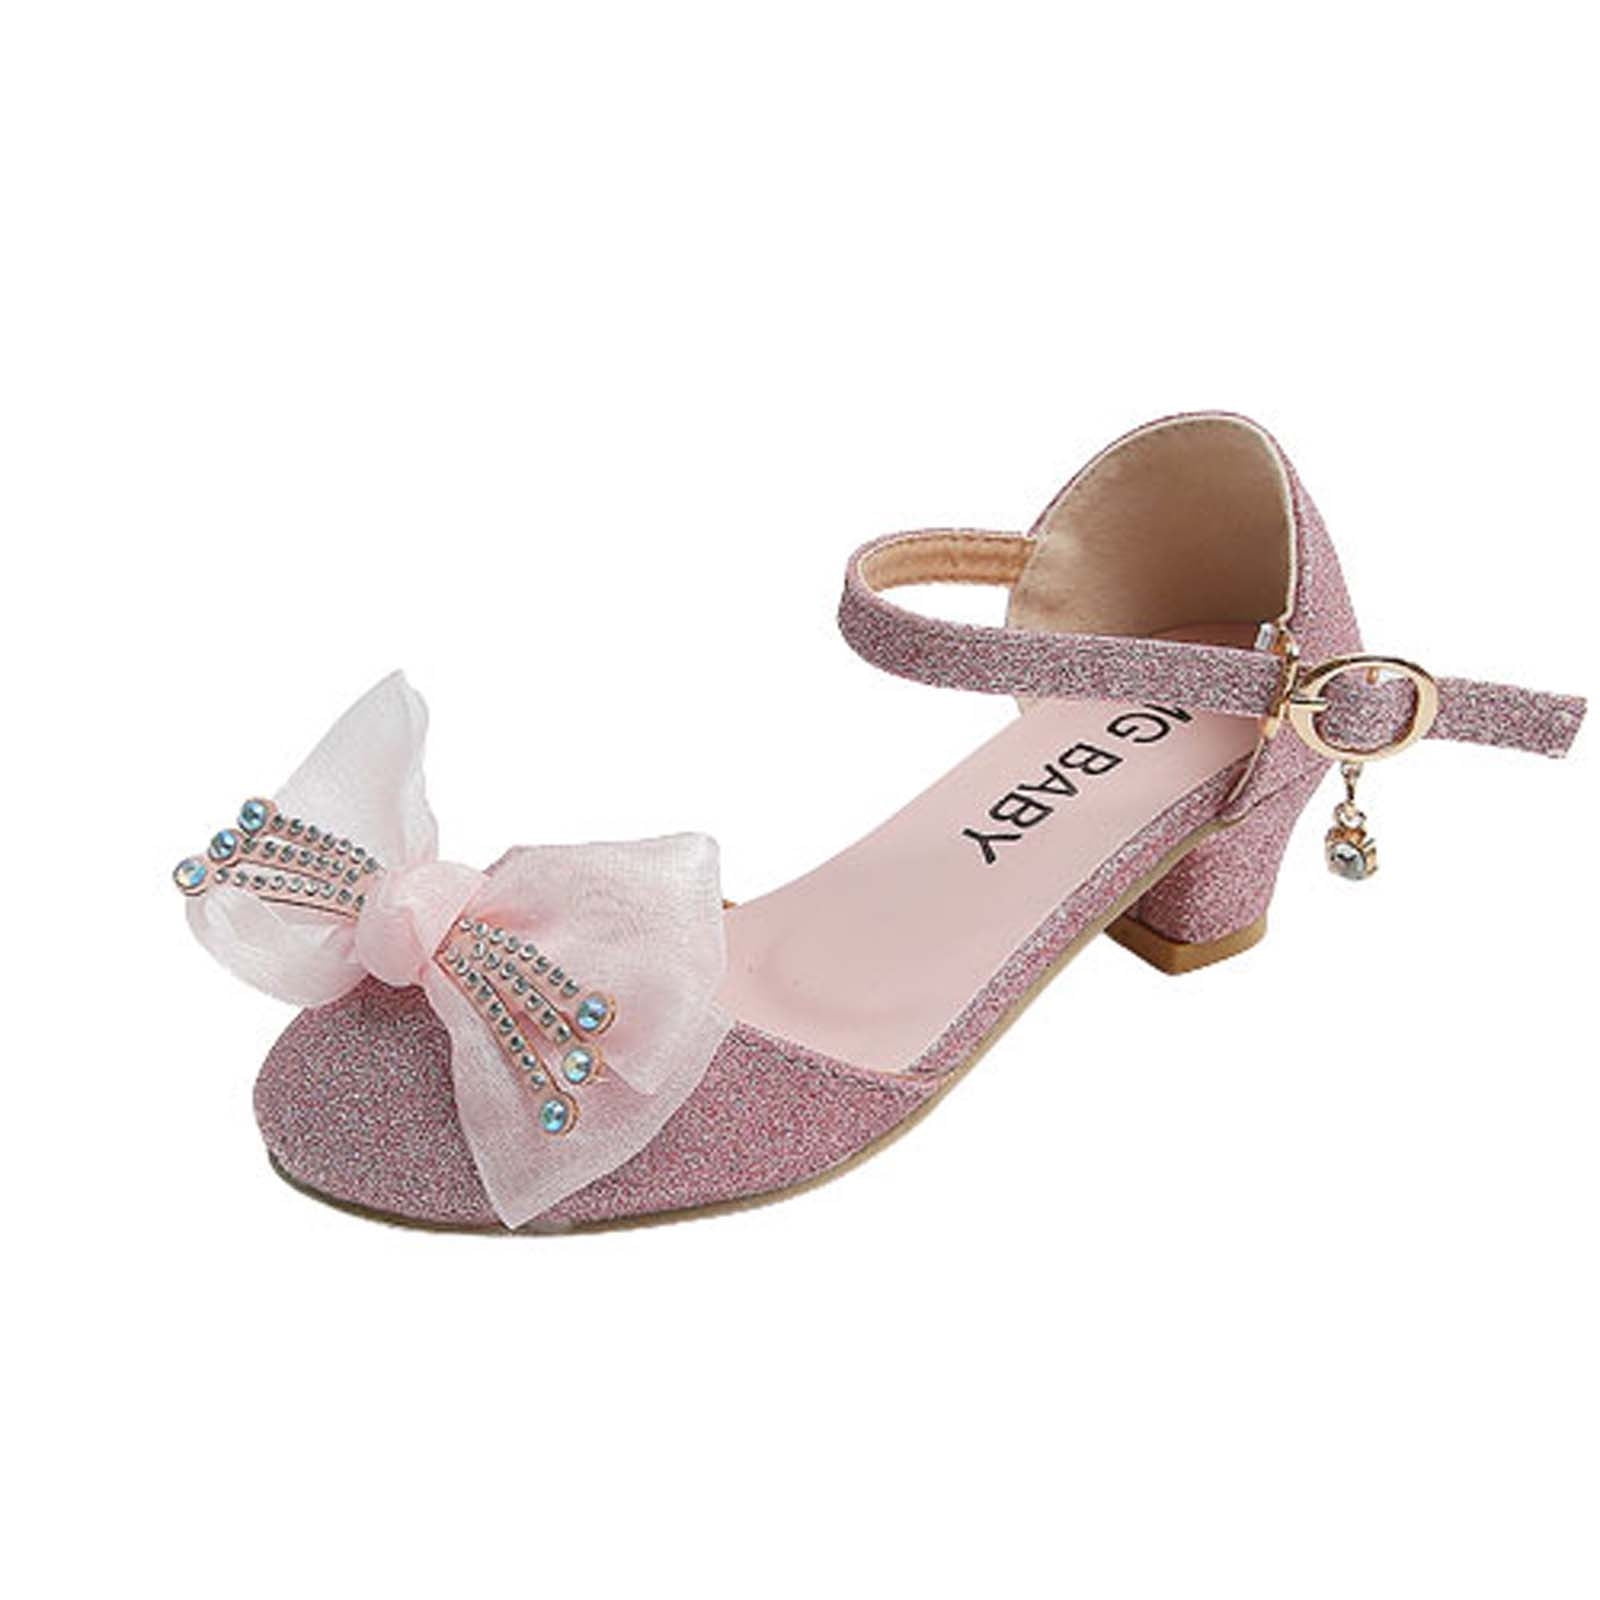 Gwen & Zoe GZ5504 White High Heel w/ Bow & Strap - Pink Princess